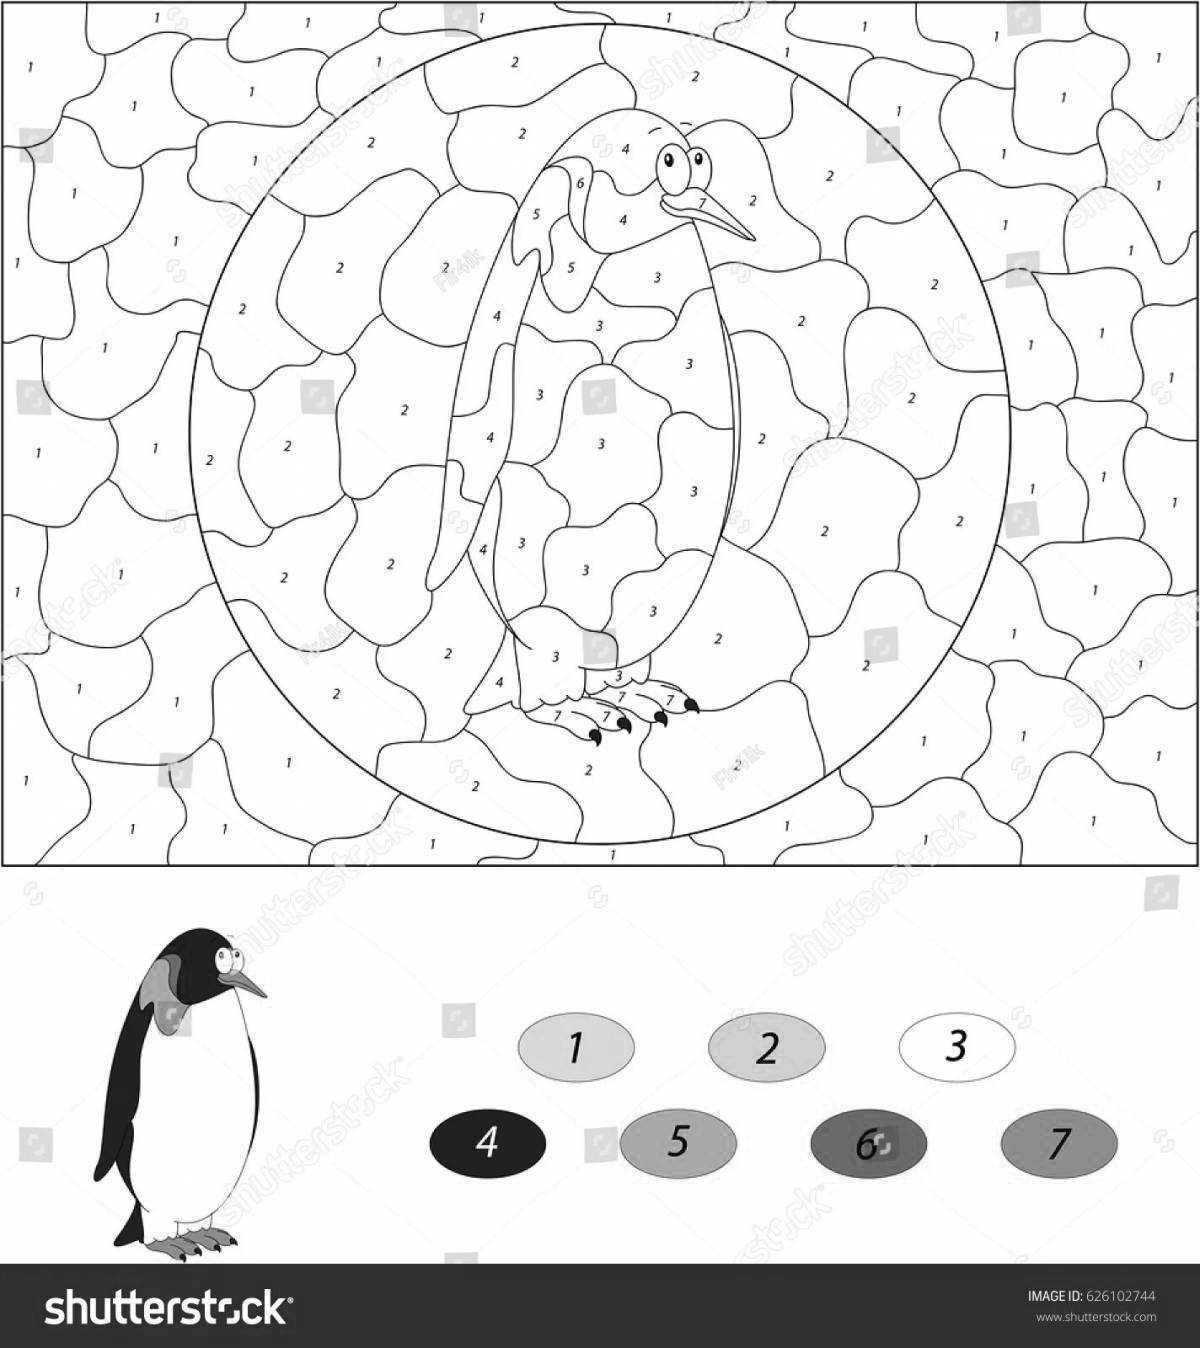 Цветной бешеный пингвин по номерам раскраски